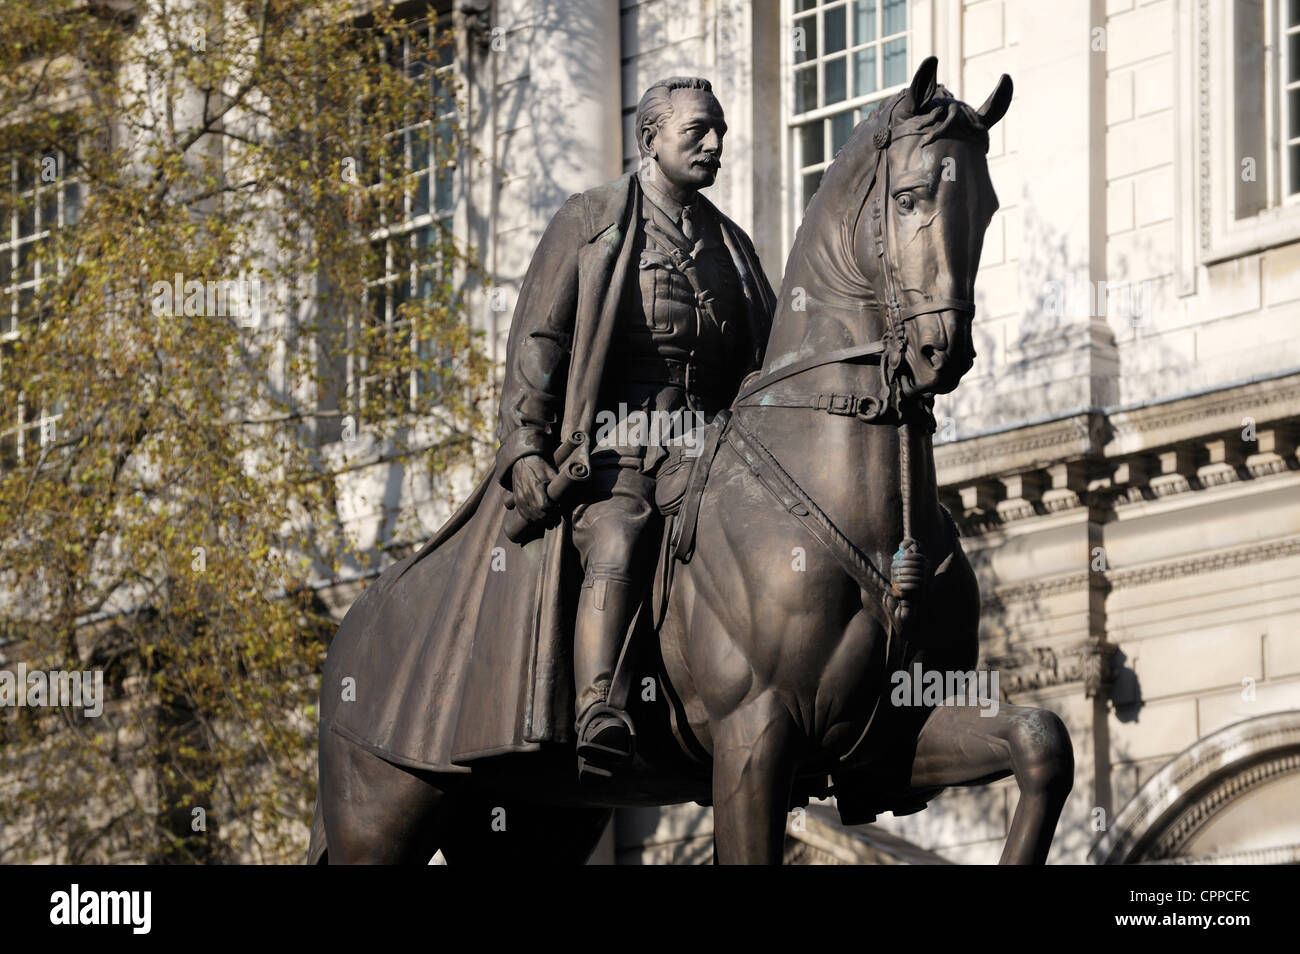 L'Earl Haig monumento equestre statua in bronzo della prima guerra mondiale comandante dell esercito Douglas Haig. Whitehall, Londra Foto Stock